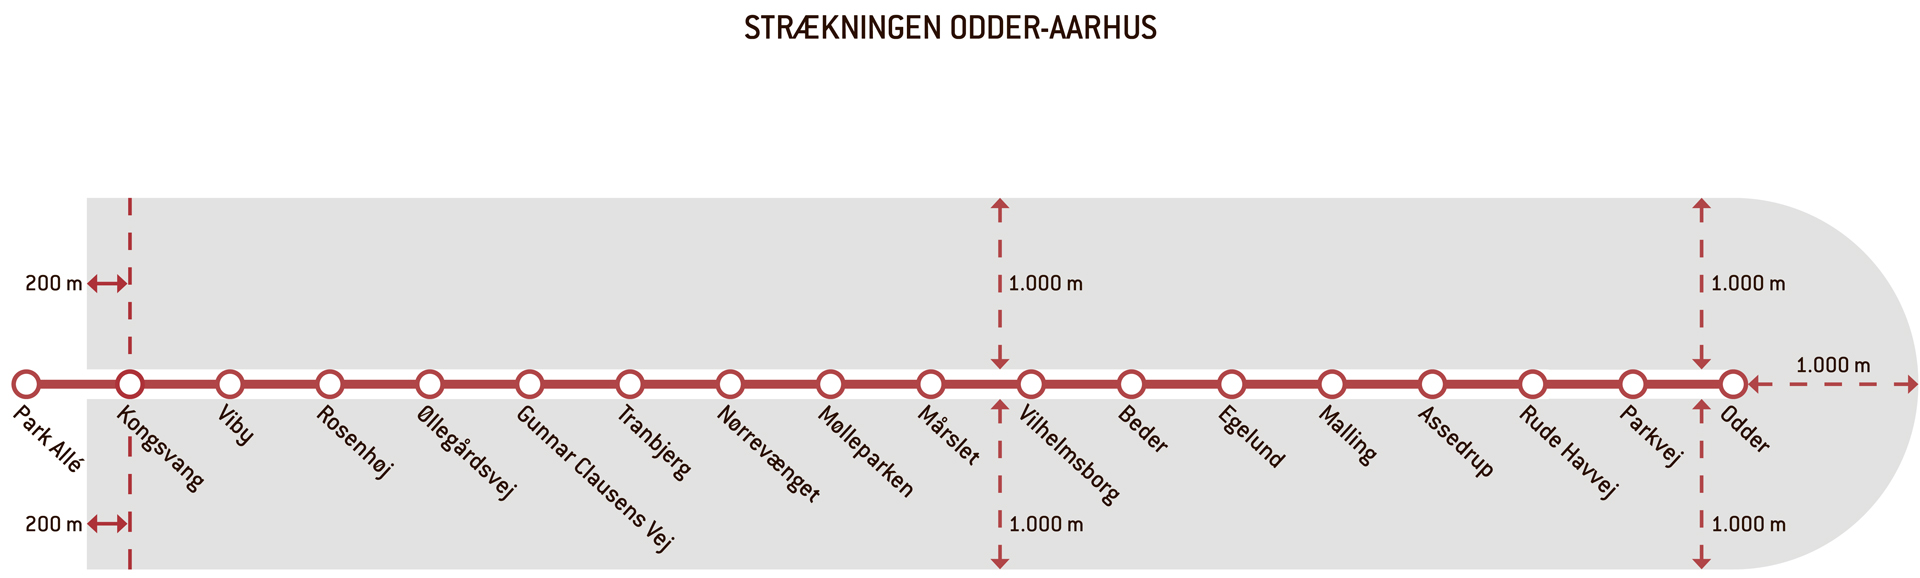 Figur der viser strækningen Odder-Aarhus